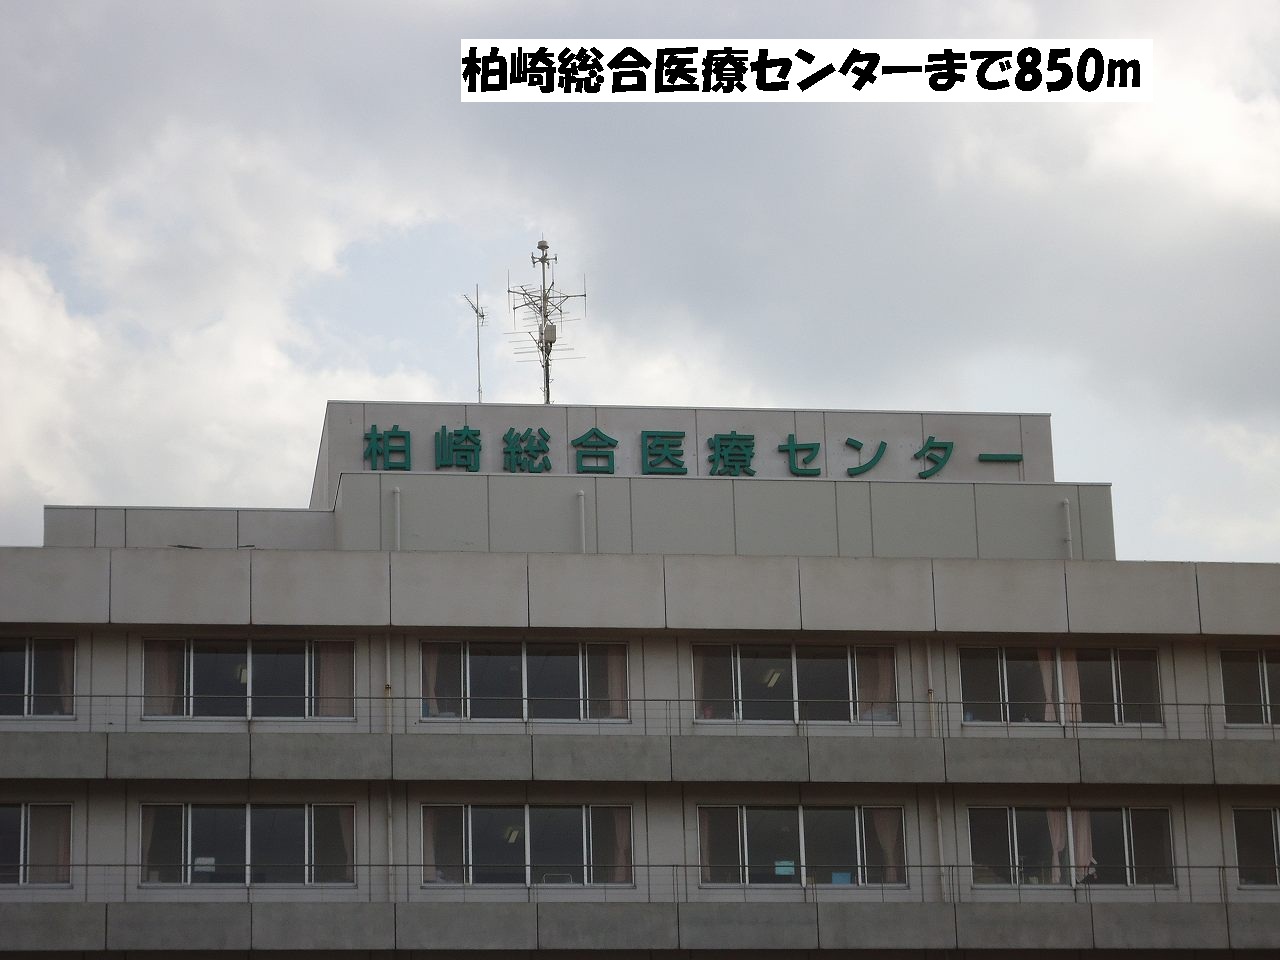 Hospital. Kashiwazaki General Medical Center until the (hospital) 850m